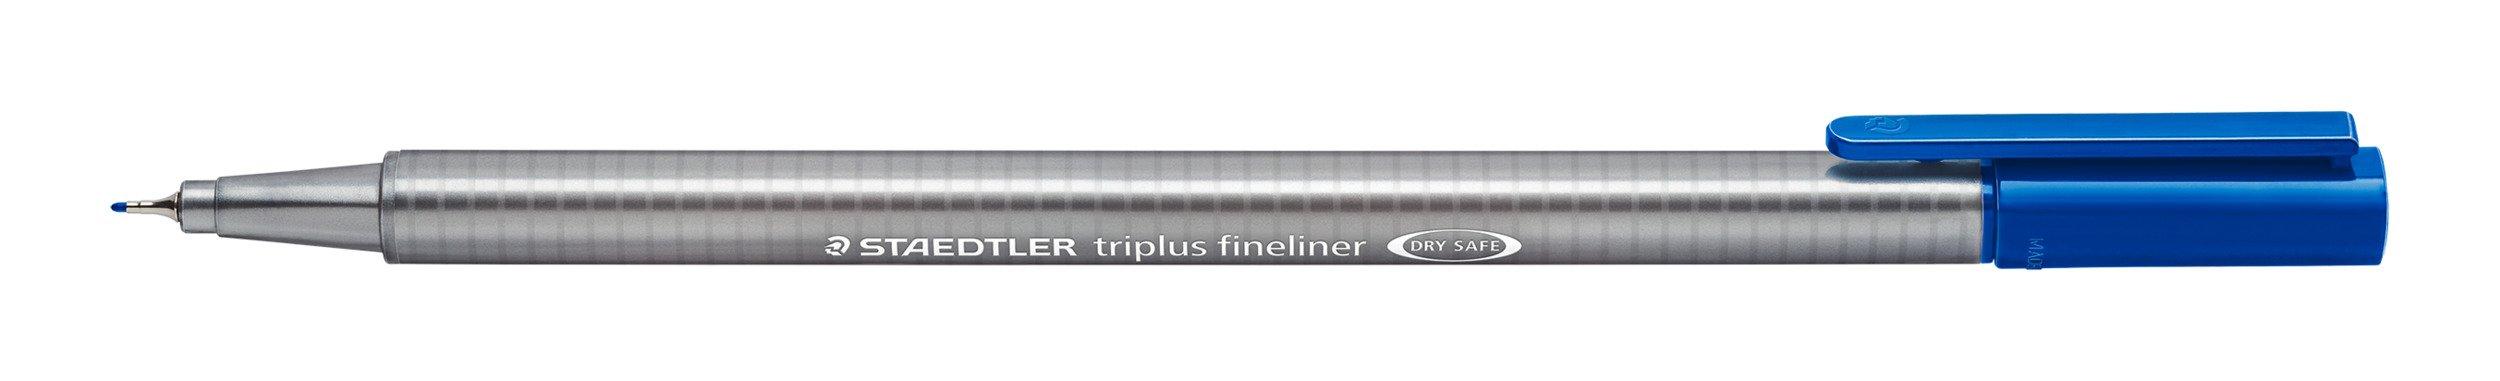 Image of STAEDTLER Fineliner triplus Fineliner 334